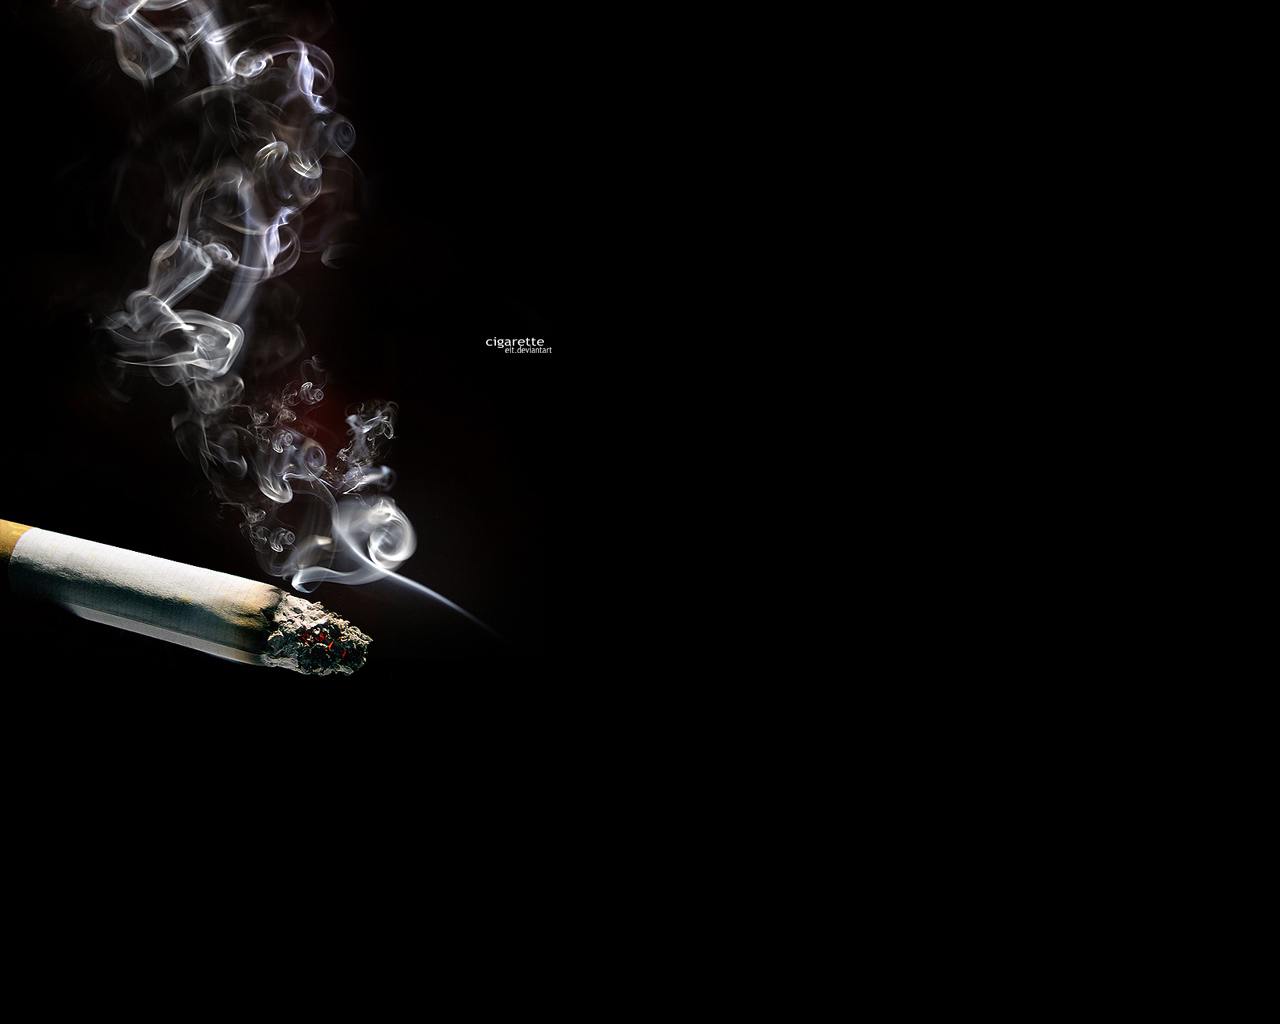  download smoking wallpaper girl cigarette smoking wallpaper 1280x1024